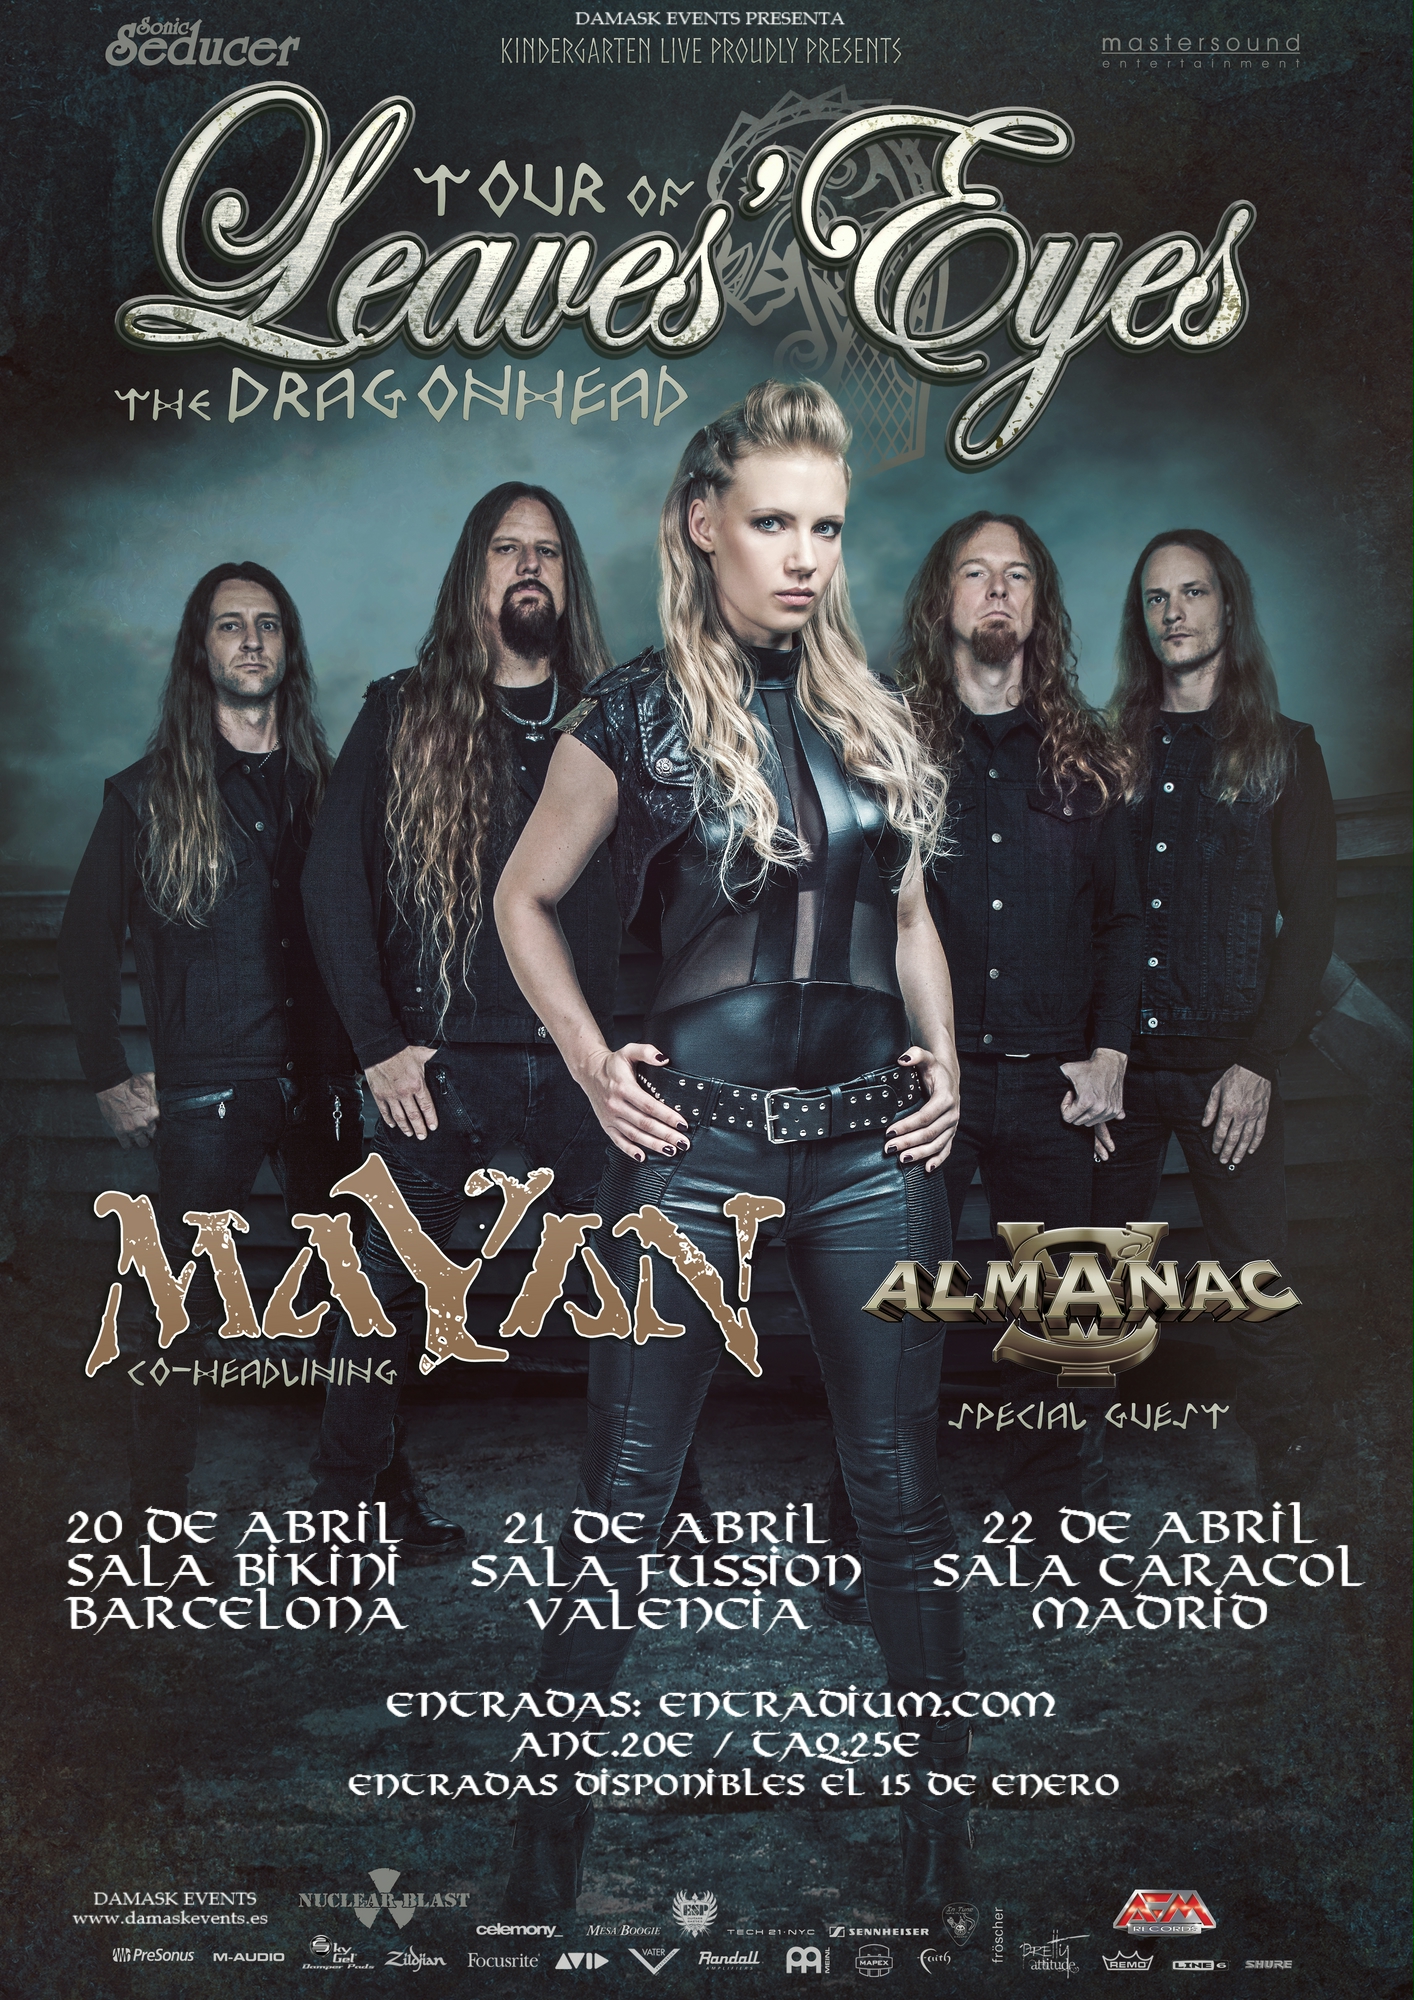 LEAVE’S EYES + MAYAN + Almanac de gira por España en abril